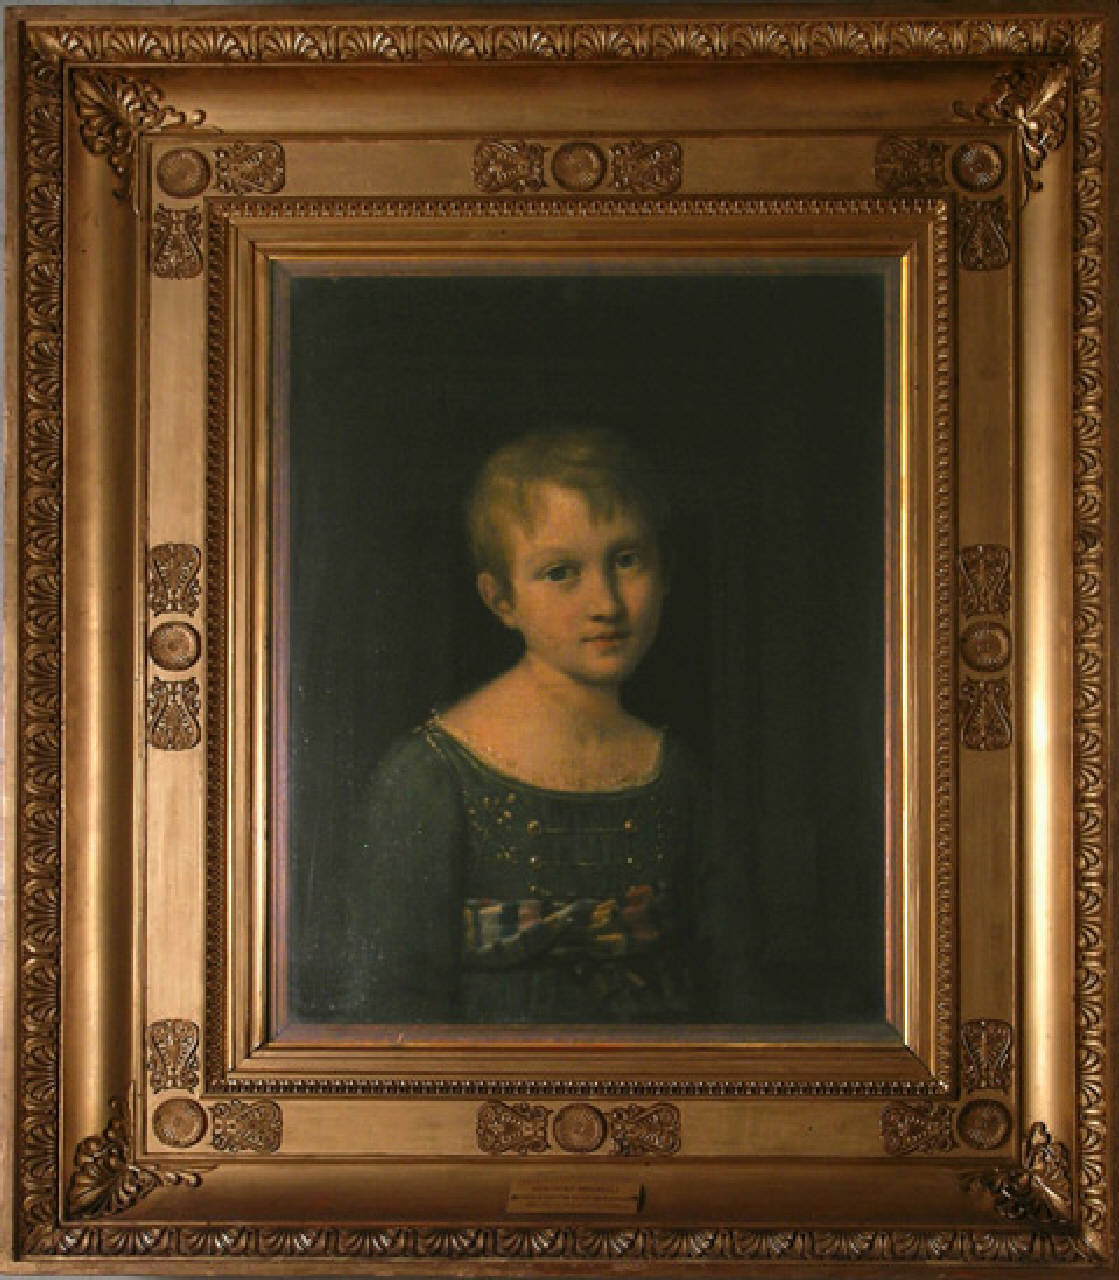 Ritratto della principessina Giuseppina Massimiliana de Beauharnais, ritratto di giuseppina massimiliana de beauharnais bambina (dipinto) di Serangeli Gioacchino (fine/inizio secc. XVIII/ XIX)